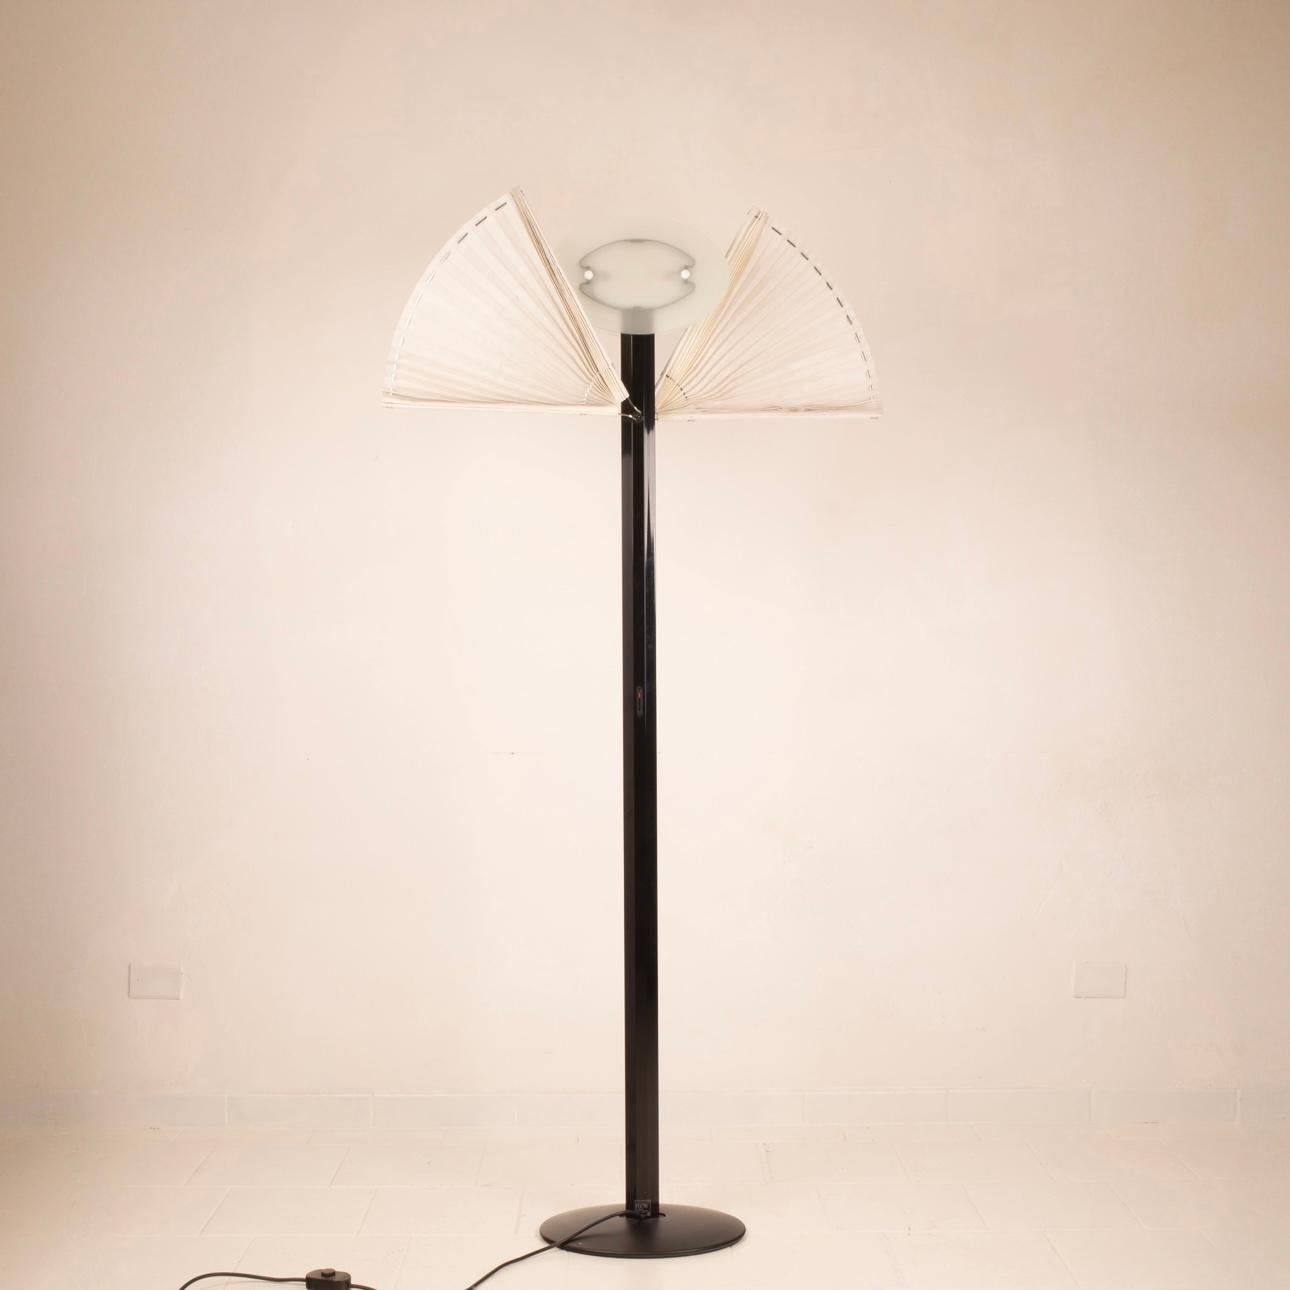 Atemberaubende Stehleuchte, entworfen von Afra & Tobia Scarpa für die italienische Firma 'Flos' in den 1980er Jahren, Modell Butterfly.
Stiel aus schwarz emailliertem Aluminium, darüber eine dimmbare Halogenlampe, ein Paar geätzte Glasscheiben